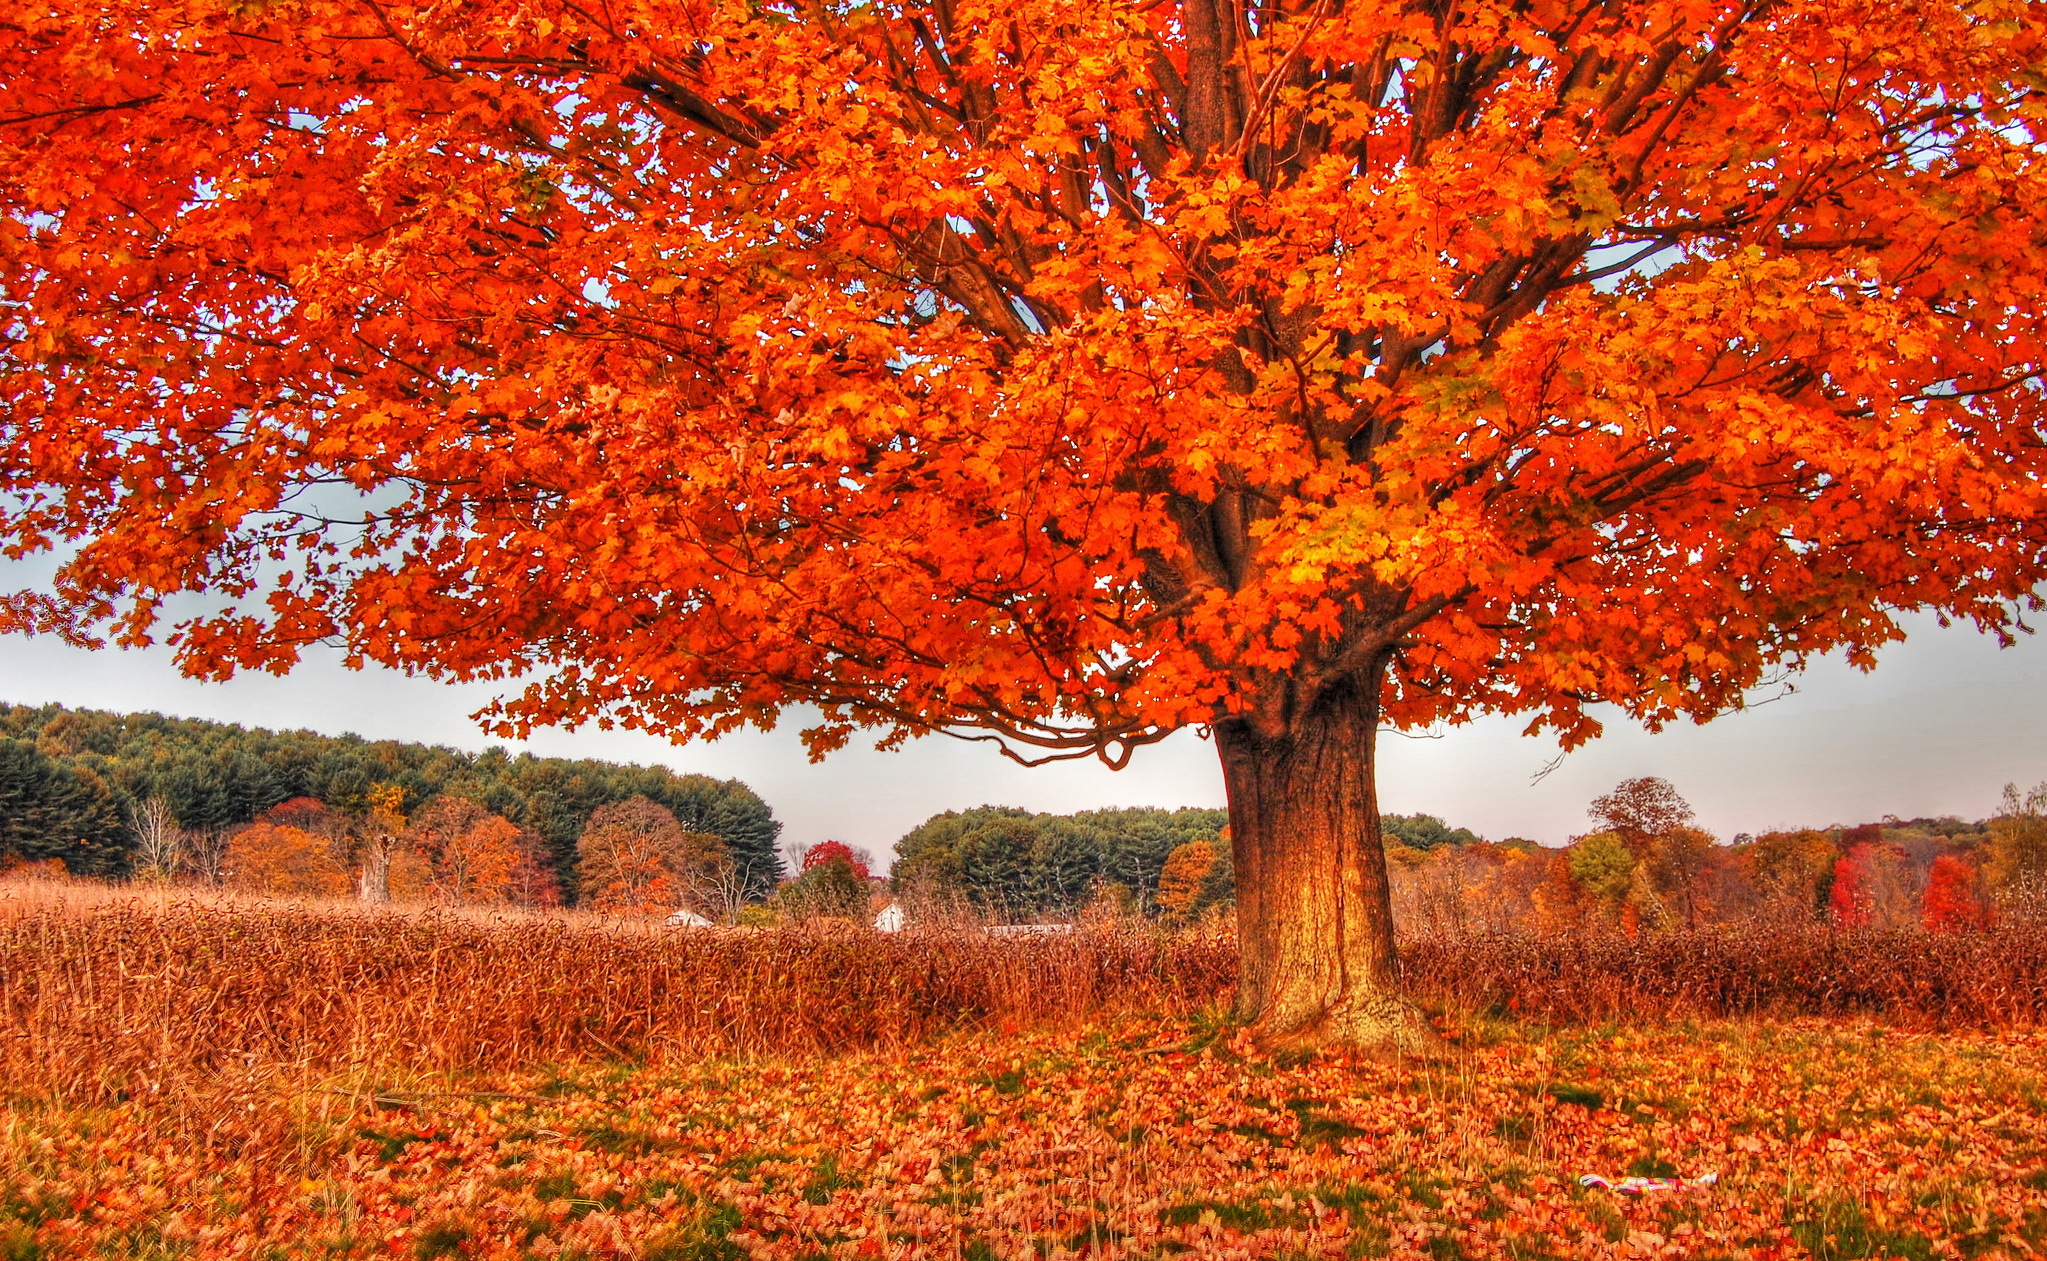 Картинки деревьев осенью. Оранжевый клен дерево. Осеннее дерево. Деревья осенью. Дерево с оранжевыми листьями.